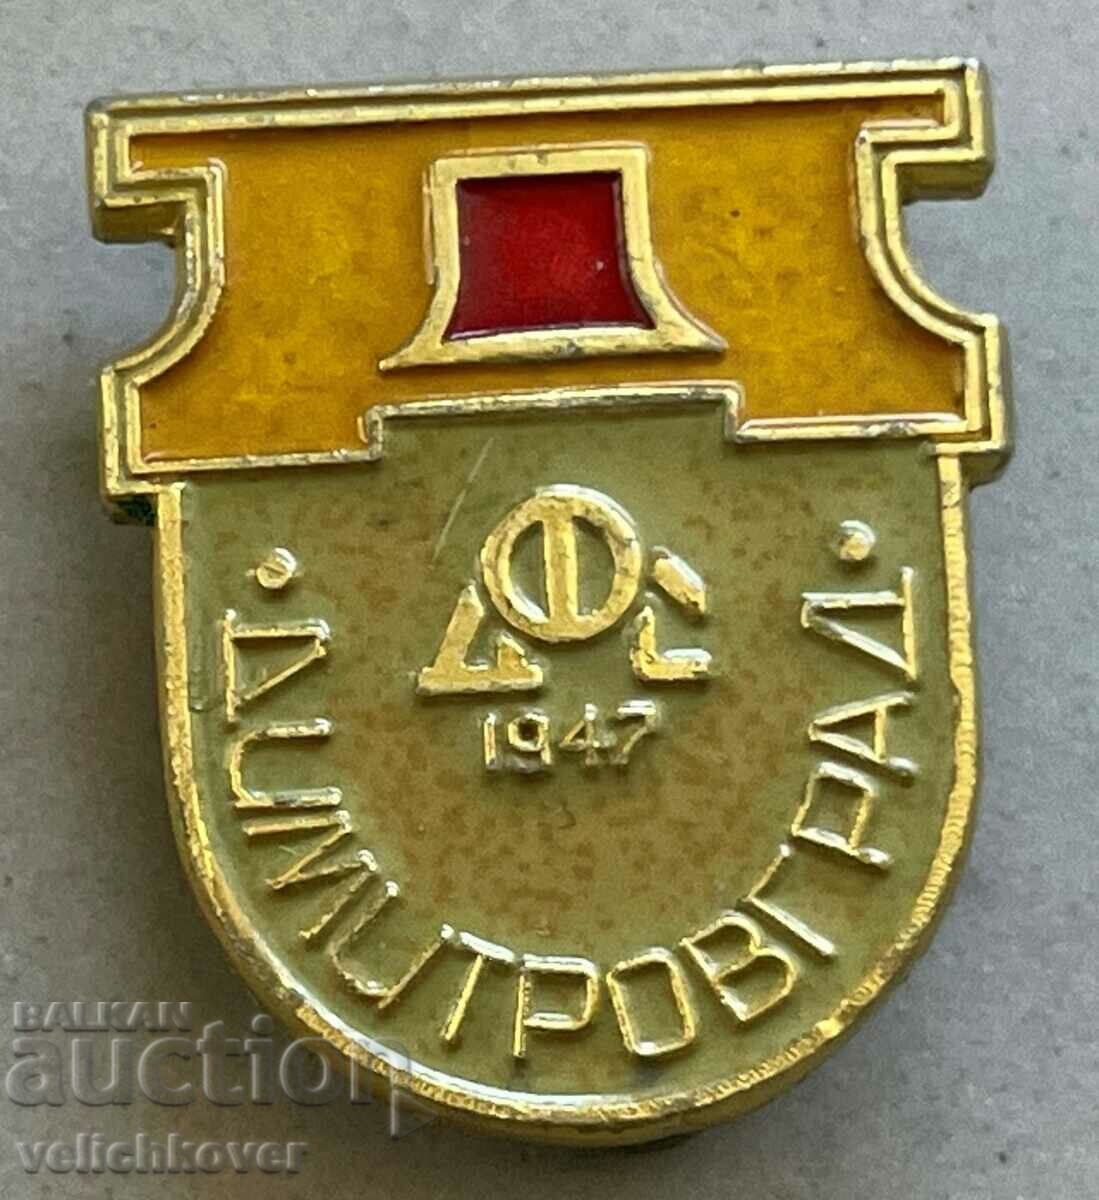 34936 България знак футболен клуб Димитровград